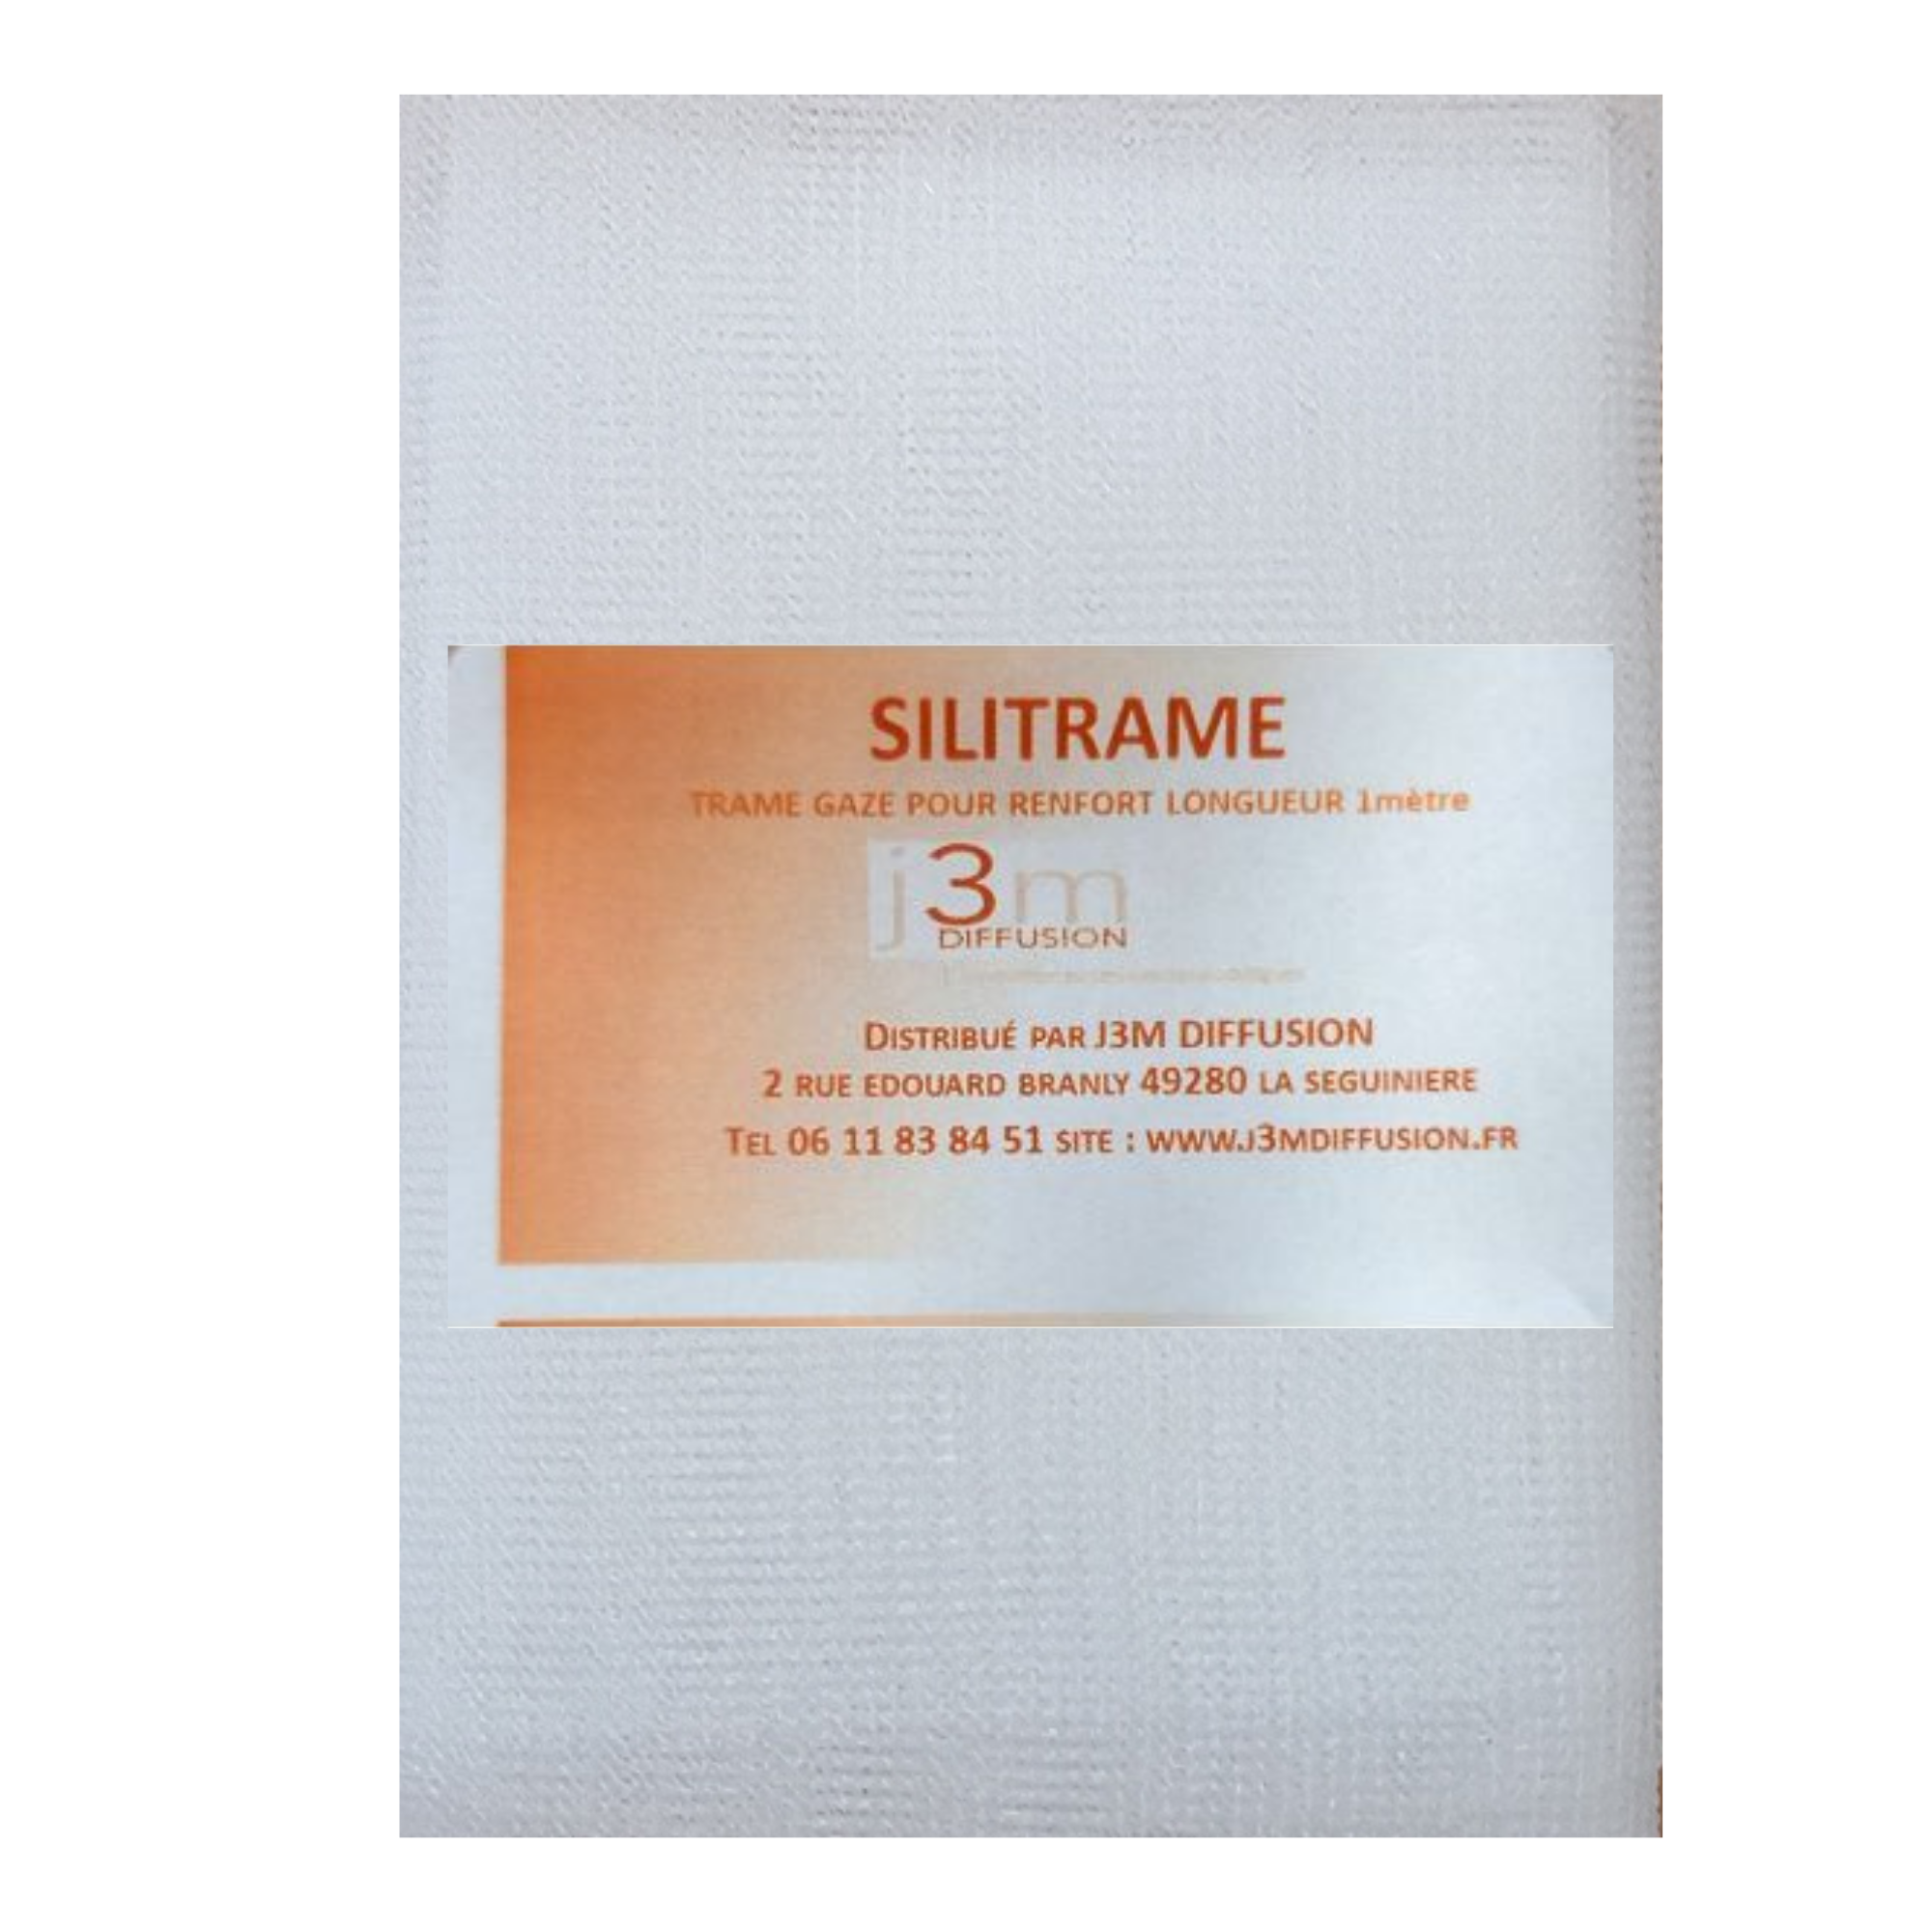 Silitrame - Trame Gaze pour orthoplastie - Pour la fabrication d'orthèse - j3m 